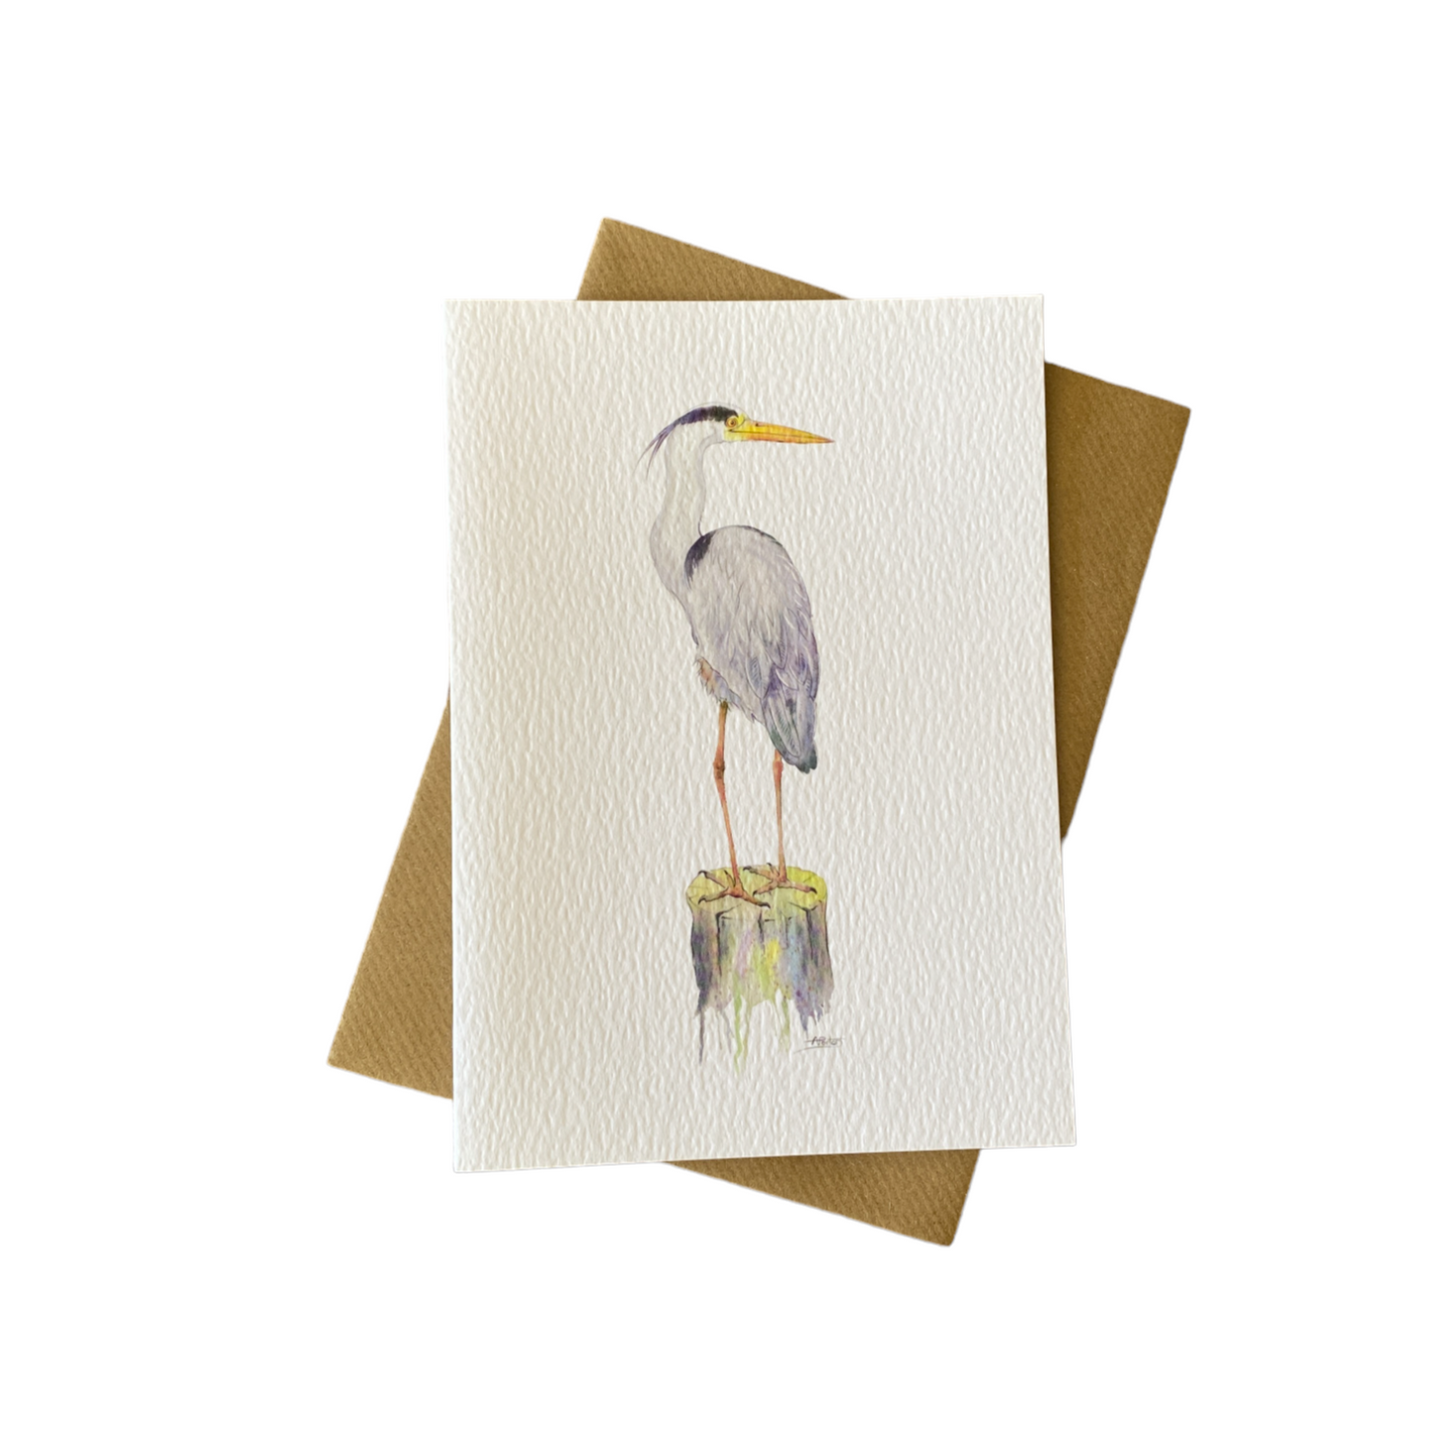 'Lookout Post' Grey Heron Greetings Card